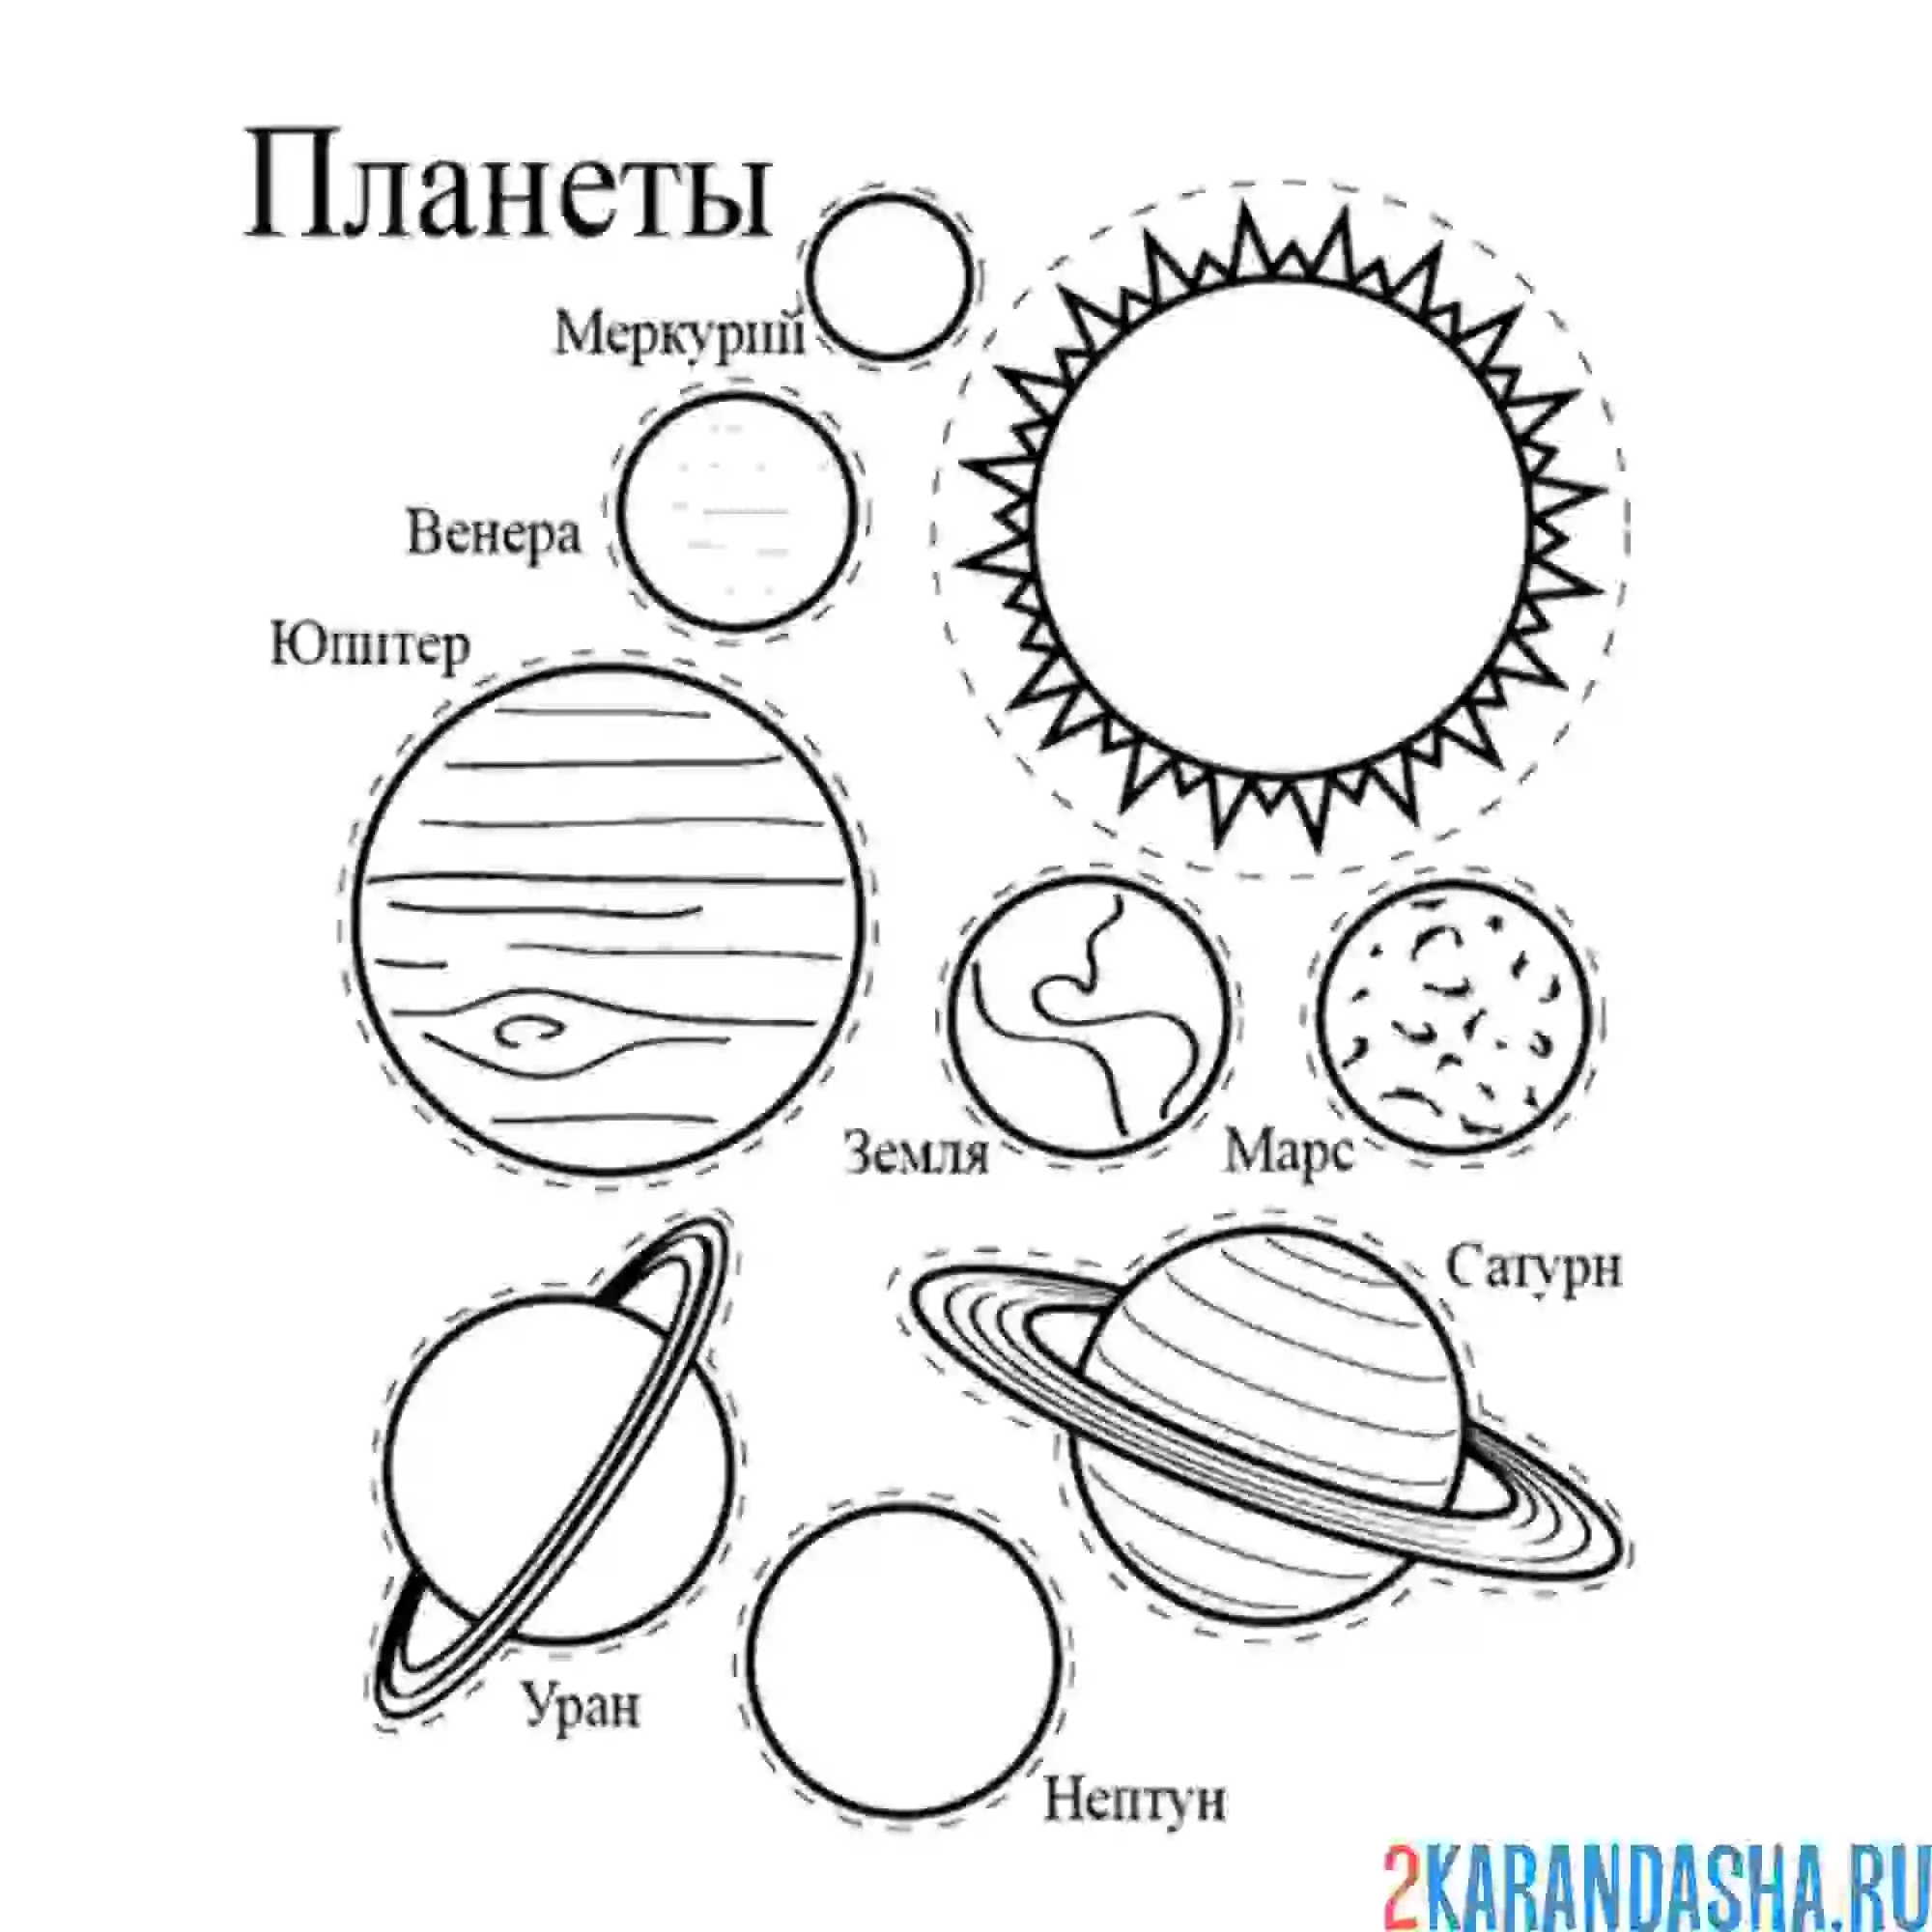 Картинки планеты солнечной системы для детей распечатать. Разукрашка планеты солнечной системы. Раскраска планеты солнечной системы для детей. Раскраски планеты солнечной системы для детей Меркурий. Раскраска планет солнечной системы для детей с названиями.